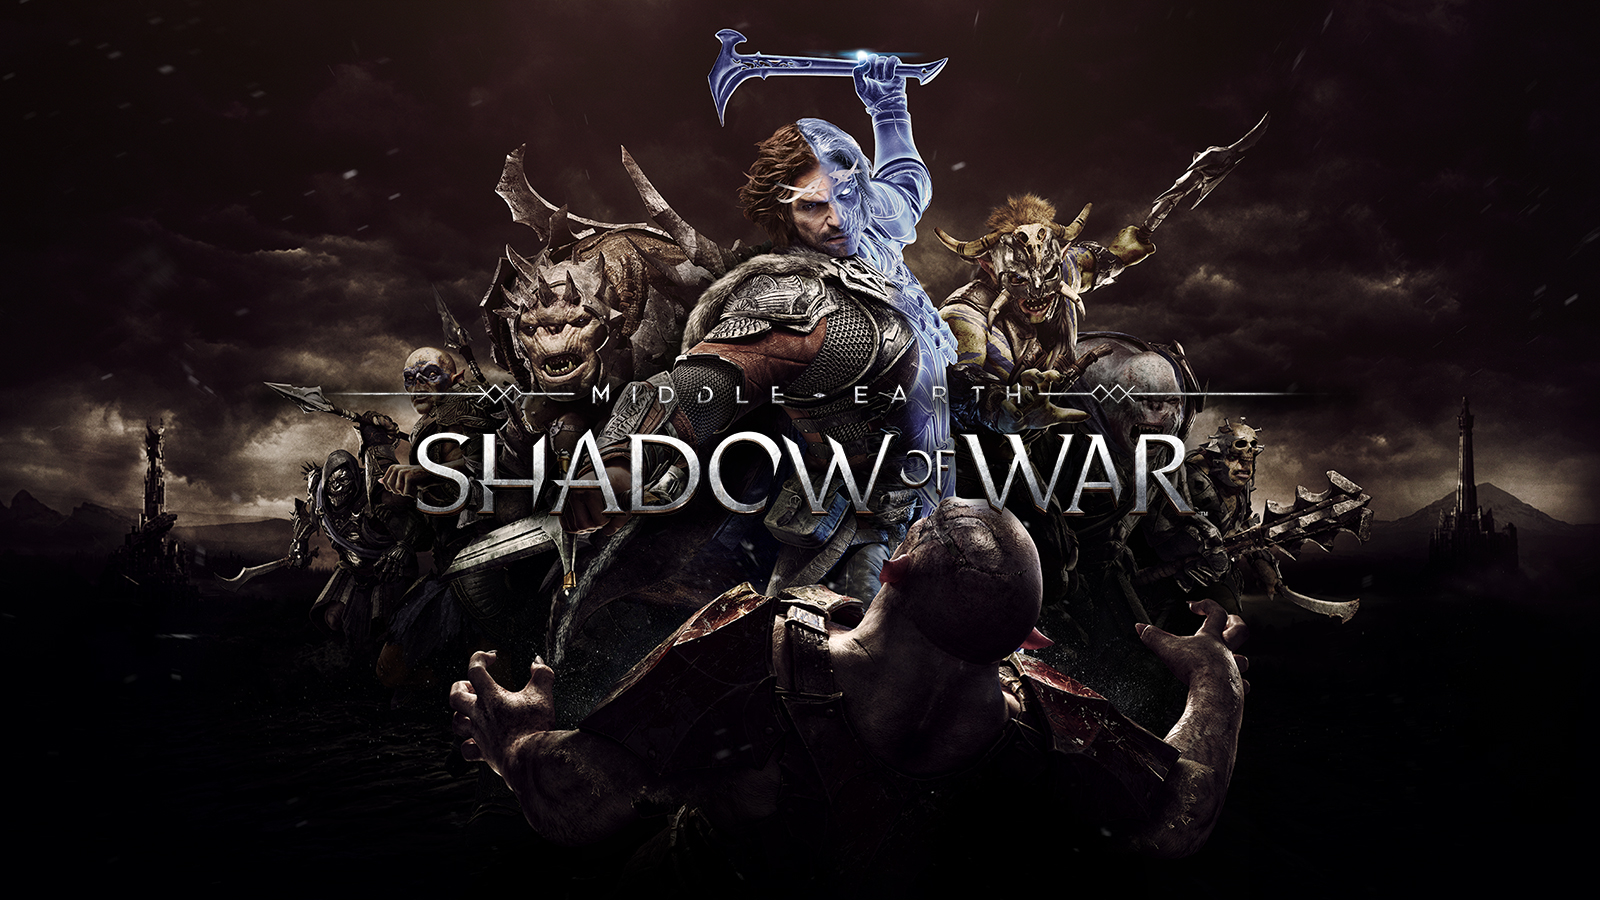 Shadow Of War com 40% OFF e mais! Confira as principais promoções de PC 12191423916454